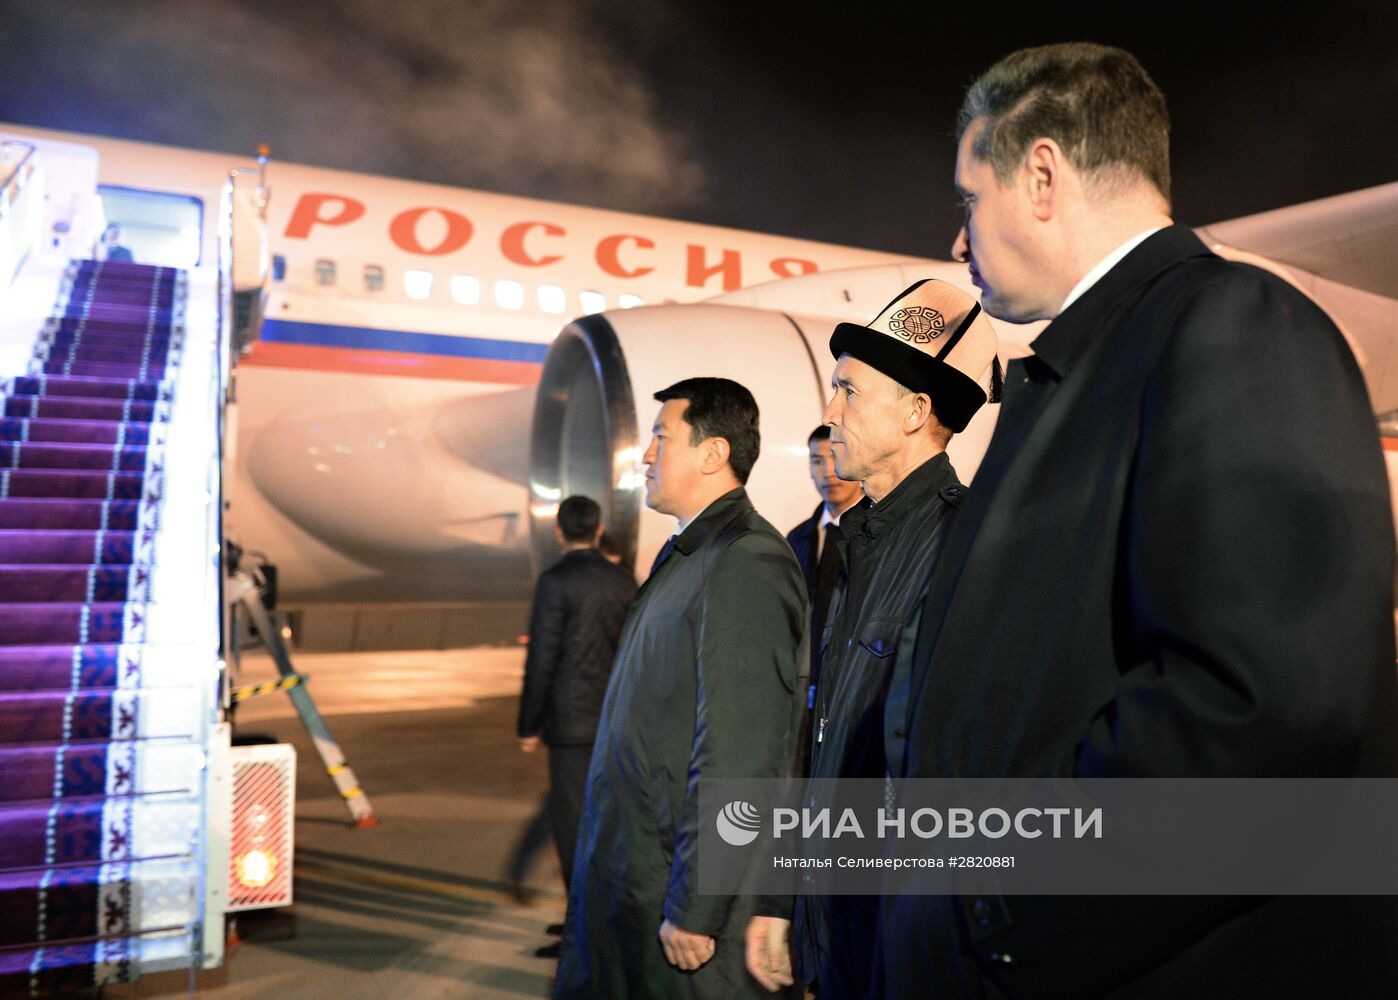 Рабочая поездка председателя Госдумы РФ С. Нарышкина в Киргизию